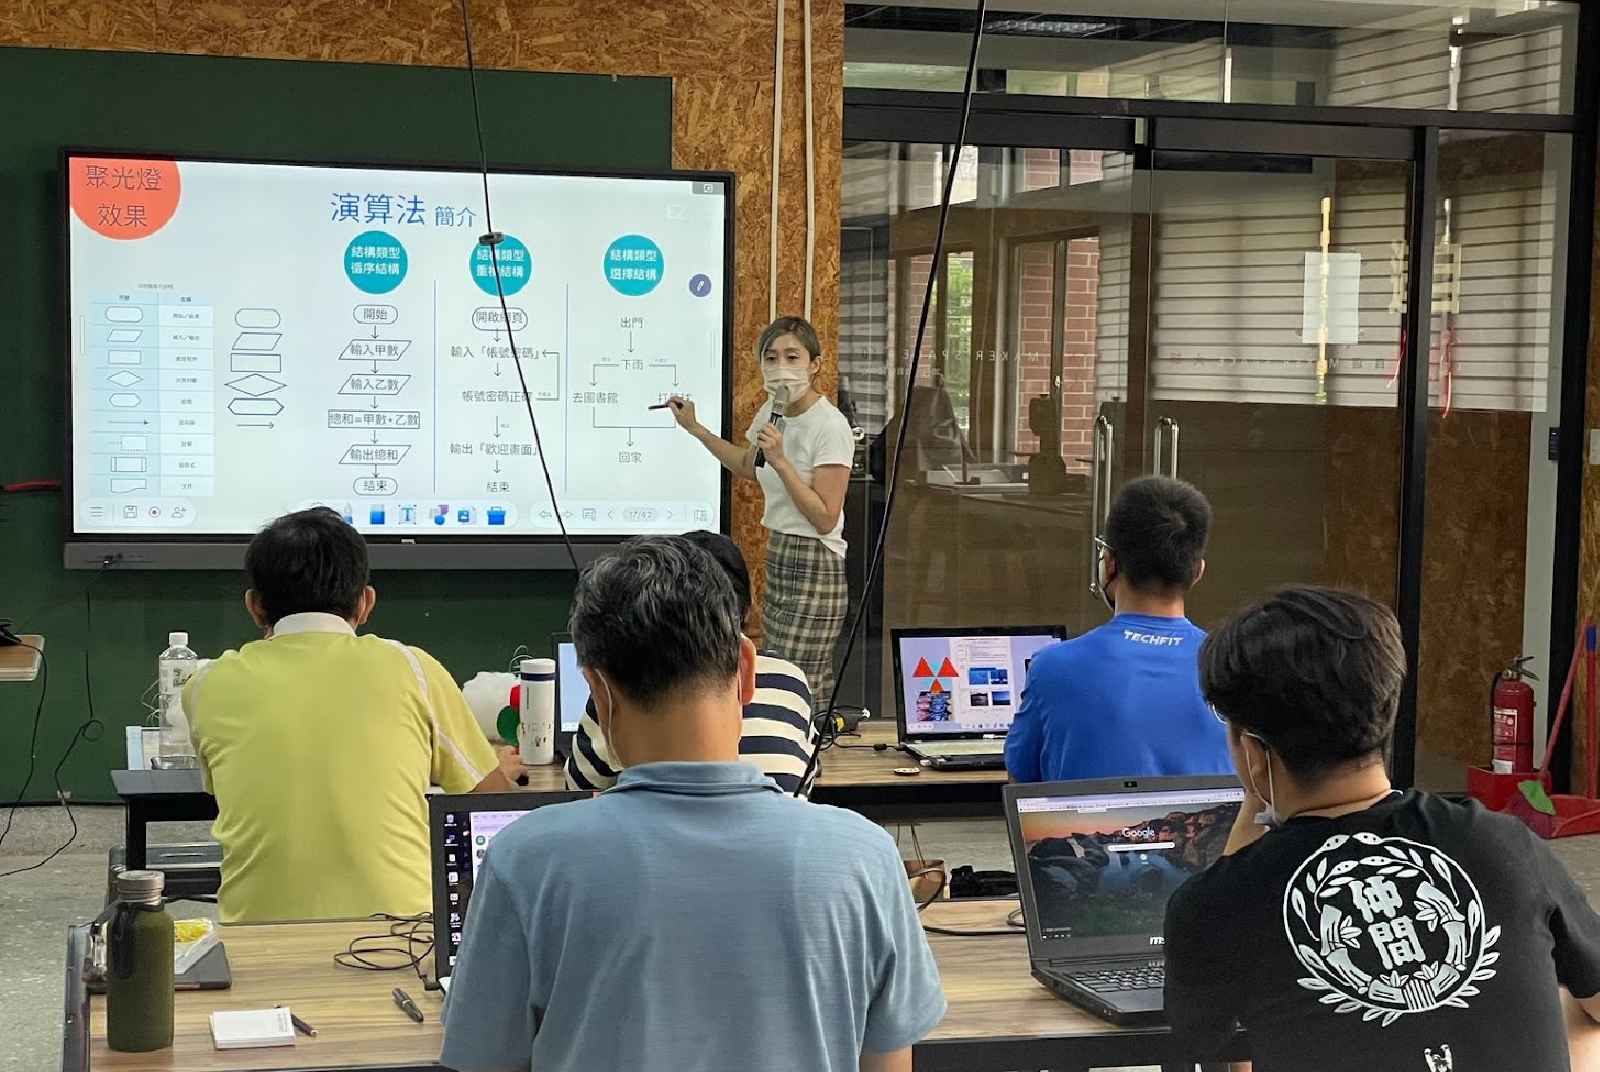 數位教育-數位教室-生生用平板-教育政策-benq-楊士良-老師-學生-台灣-科技-教學工作坊